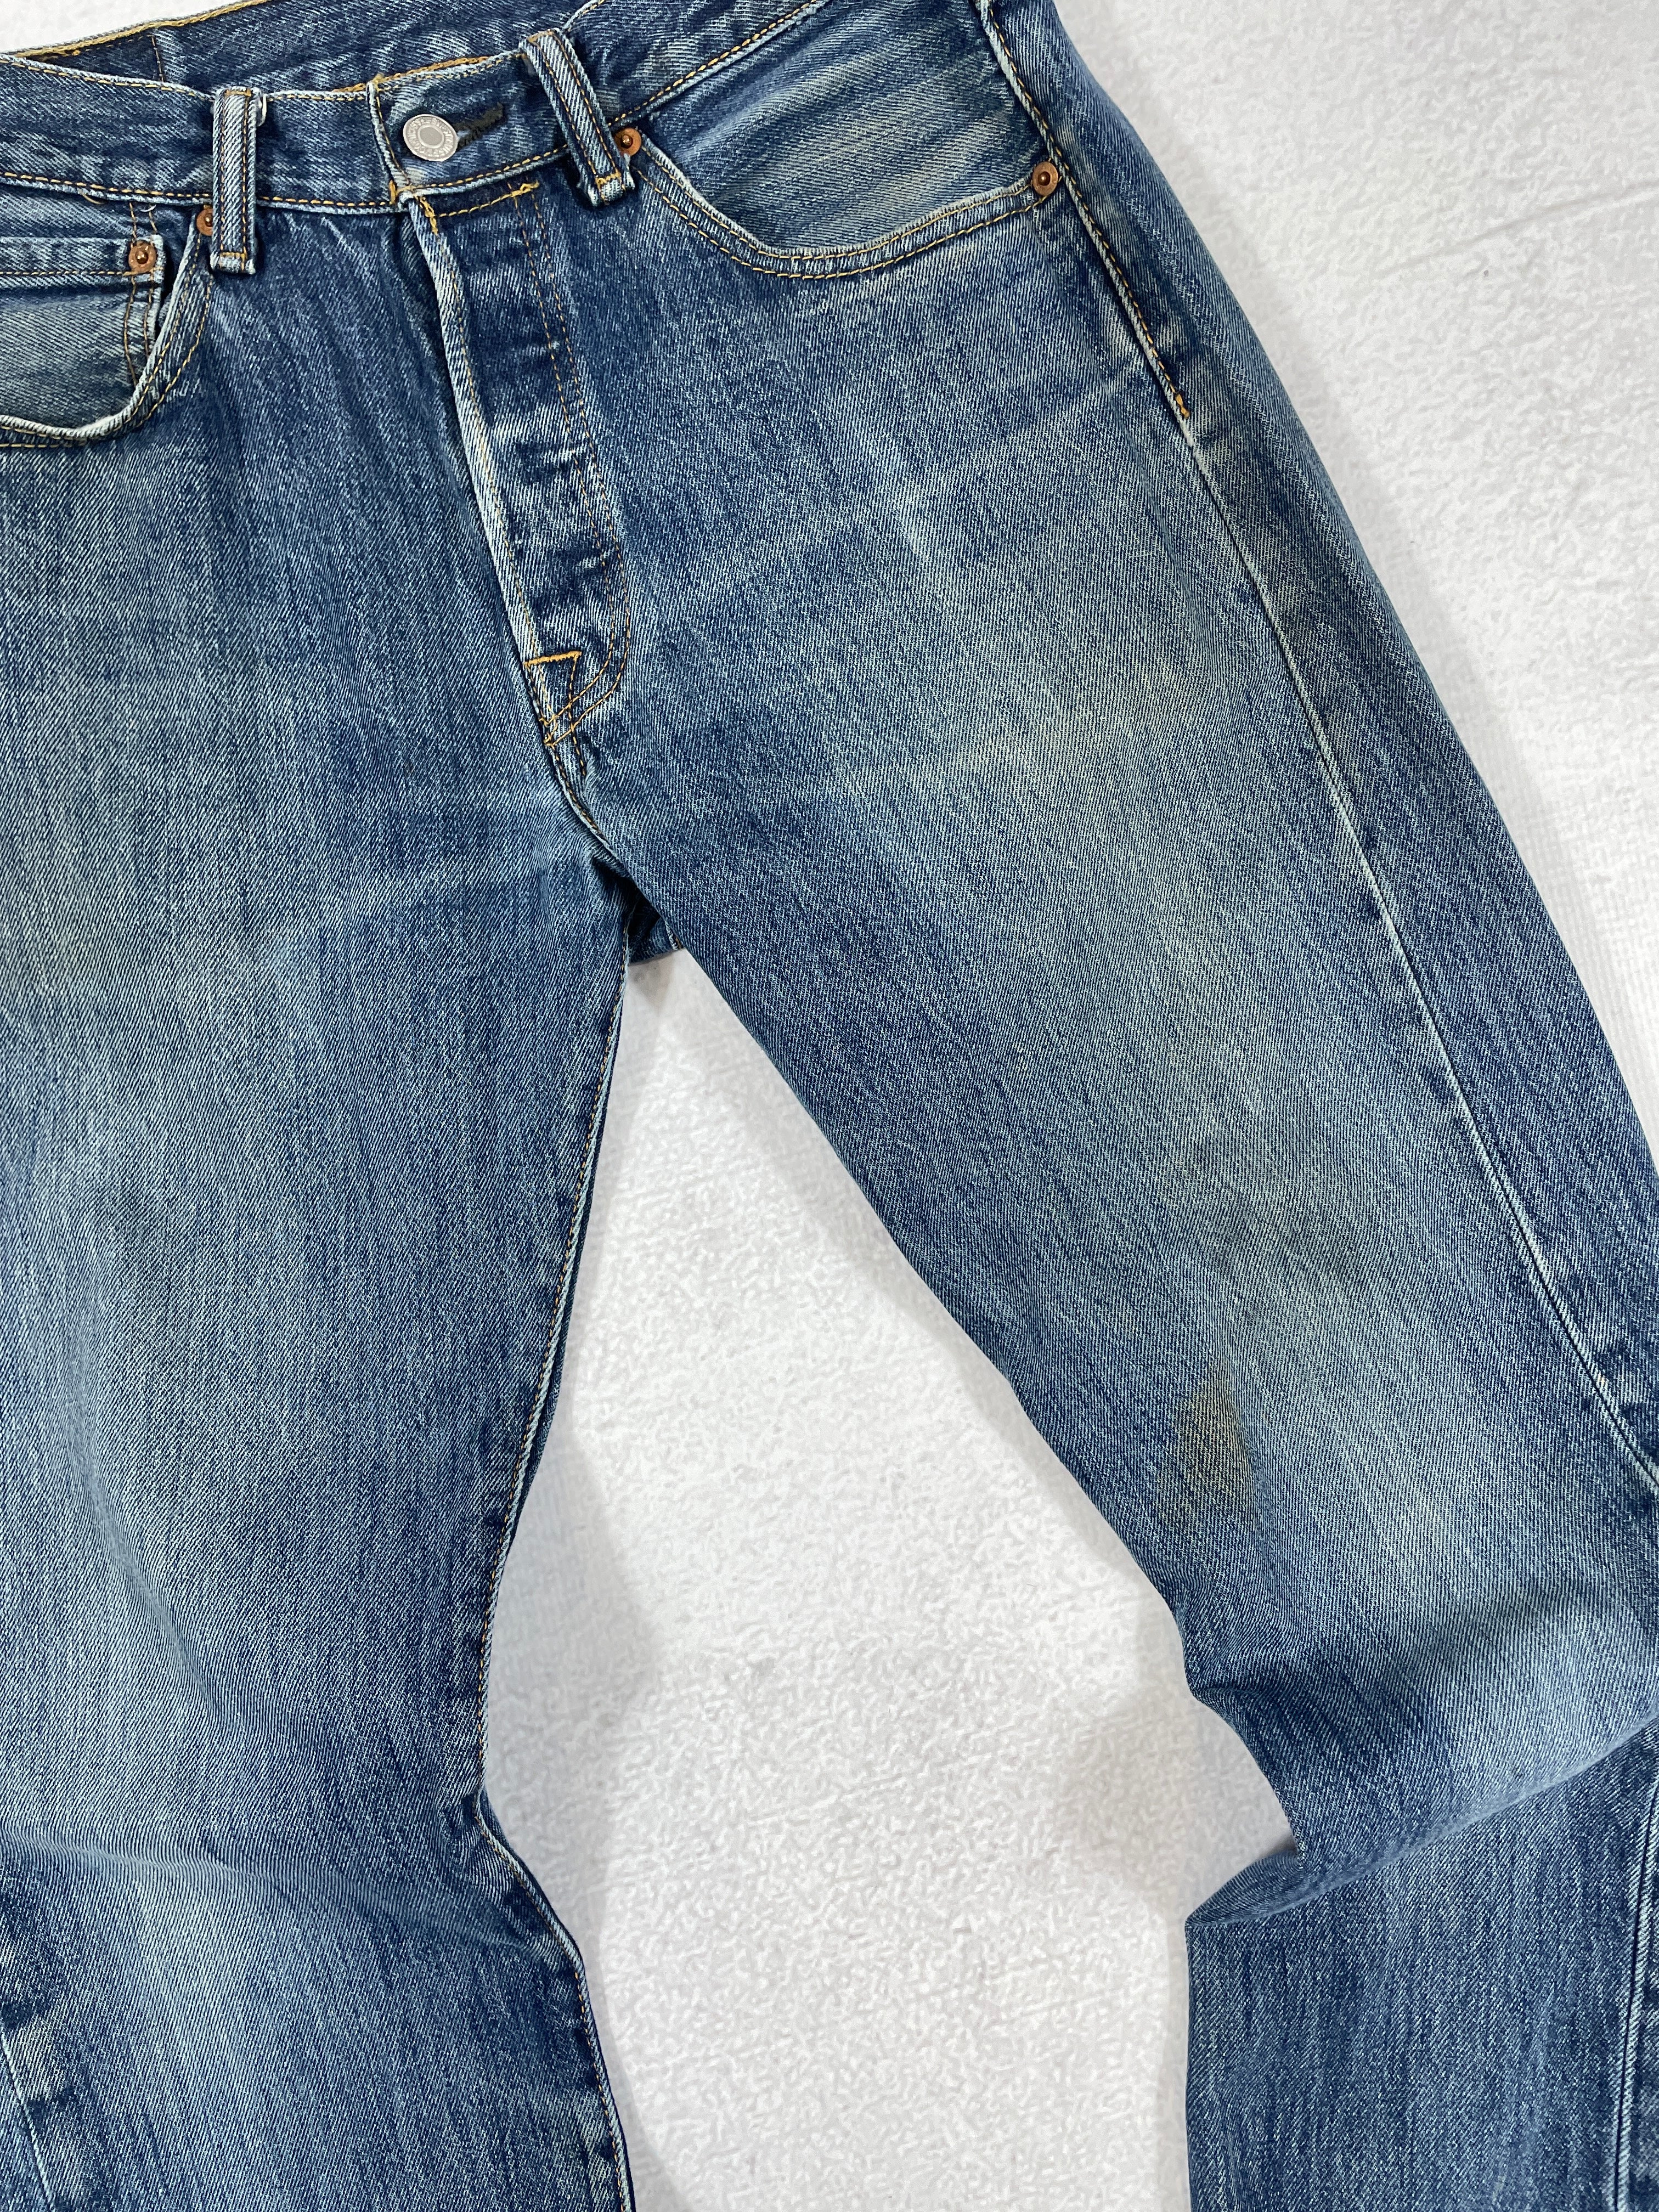 Vintage Levis 501 Jeans - Men's 31x36L